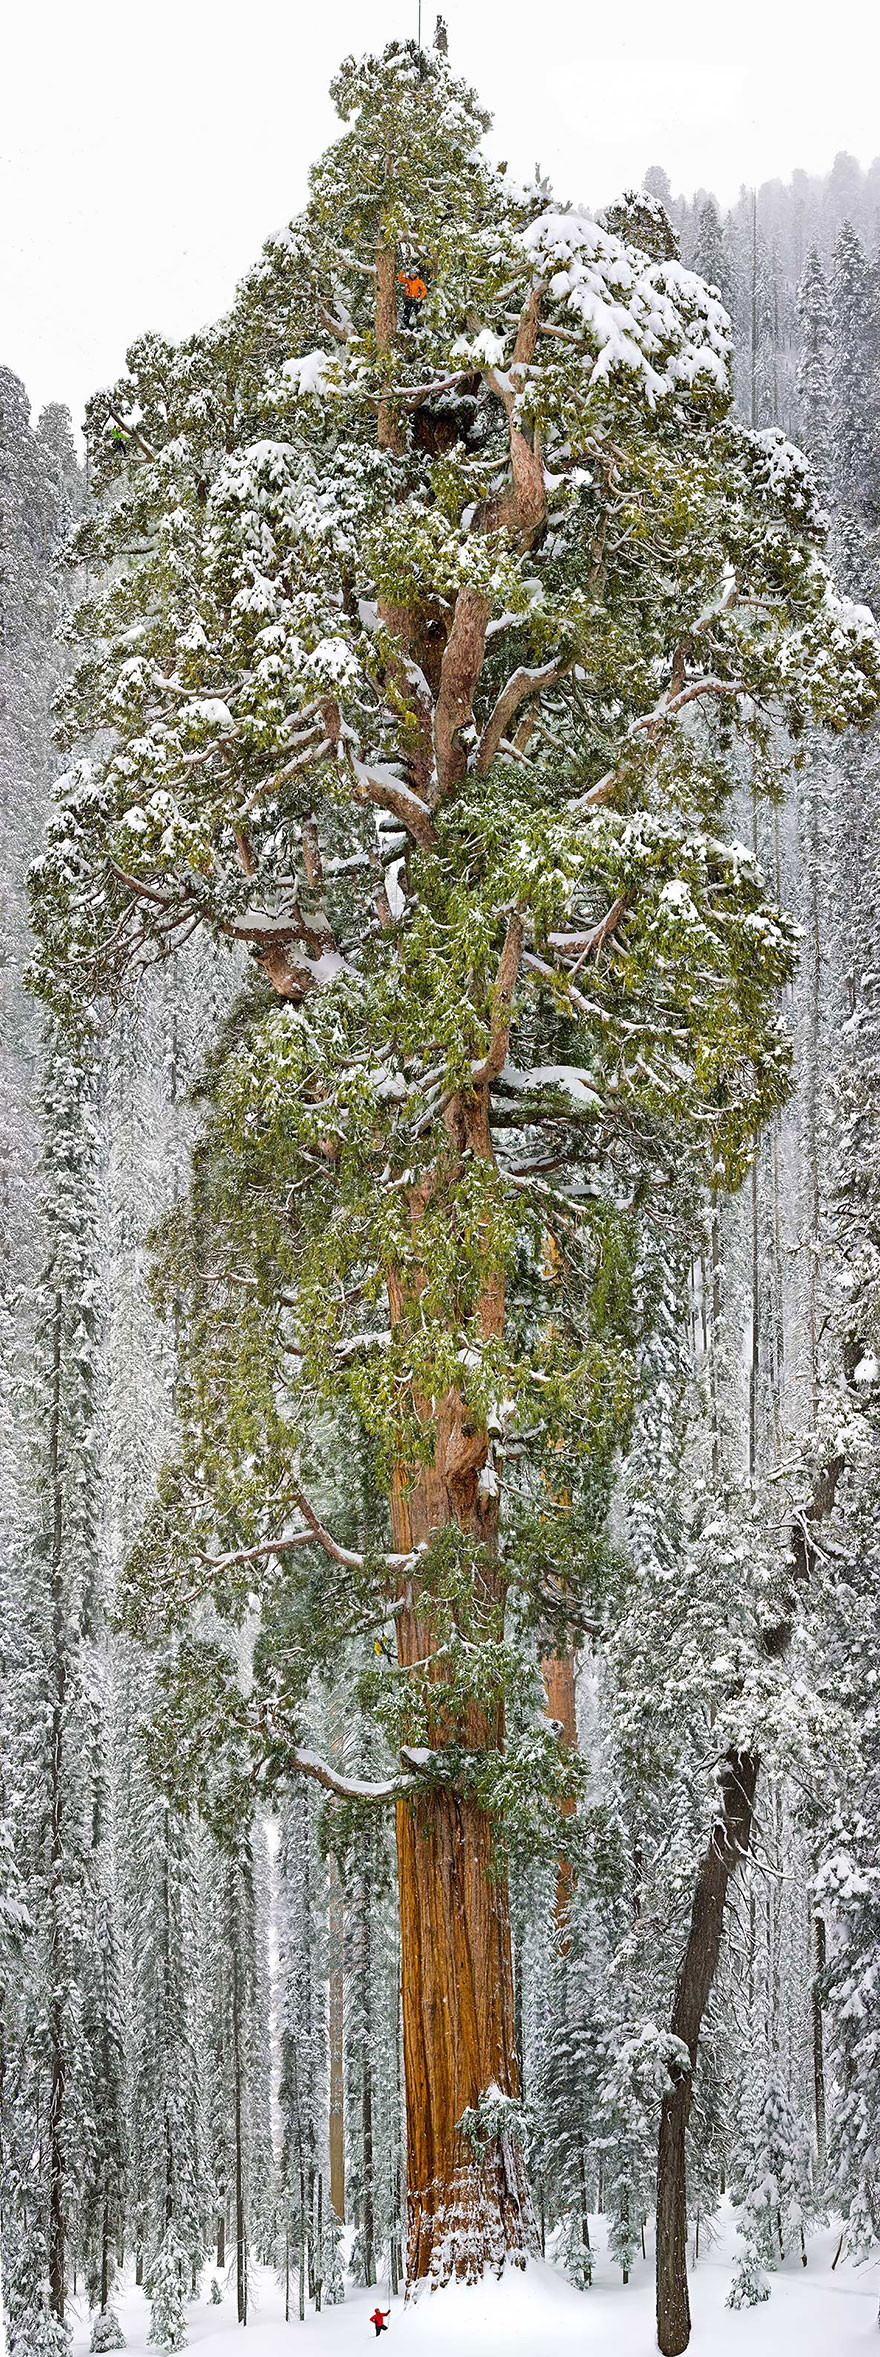 
Cao 75 mét, chu vi 28 mét, cây cù tùng có tên President này có kích thước tương đương một tòa nhà 20 tầng. Cây có tuổi thọ hơn 3200 năm tuổi, nằm ở vườn quốc gia Sequoia, California, Mỹ. Để trèo được lên tới ngọn cây như người trong ảnh không hề là điều dễ dàng tí nào.